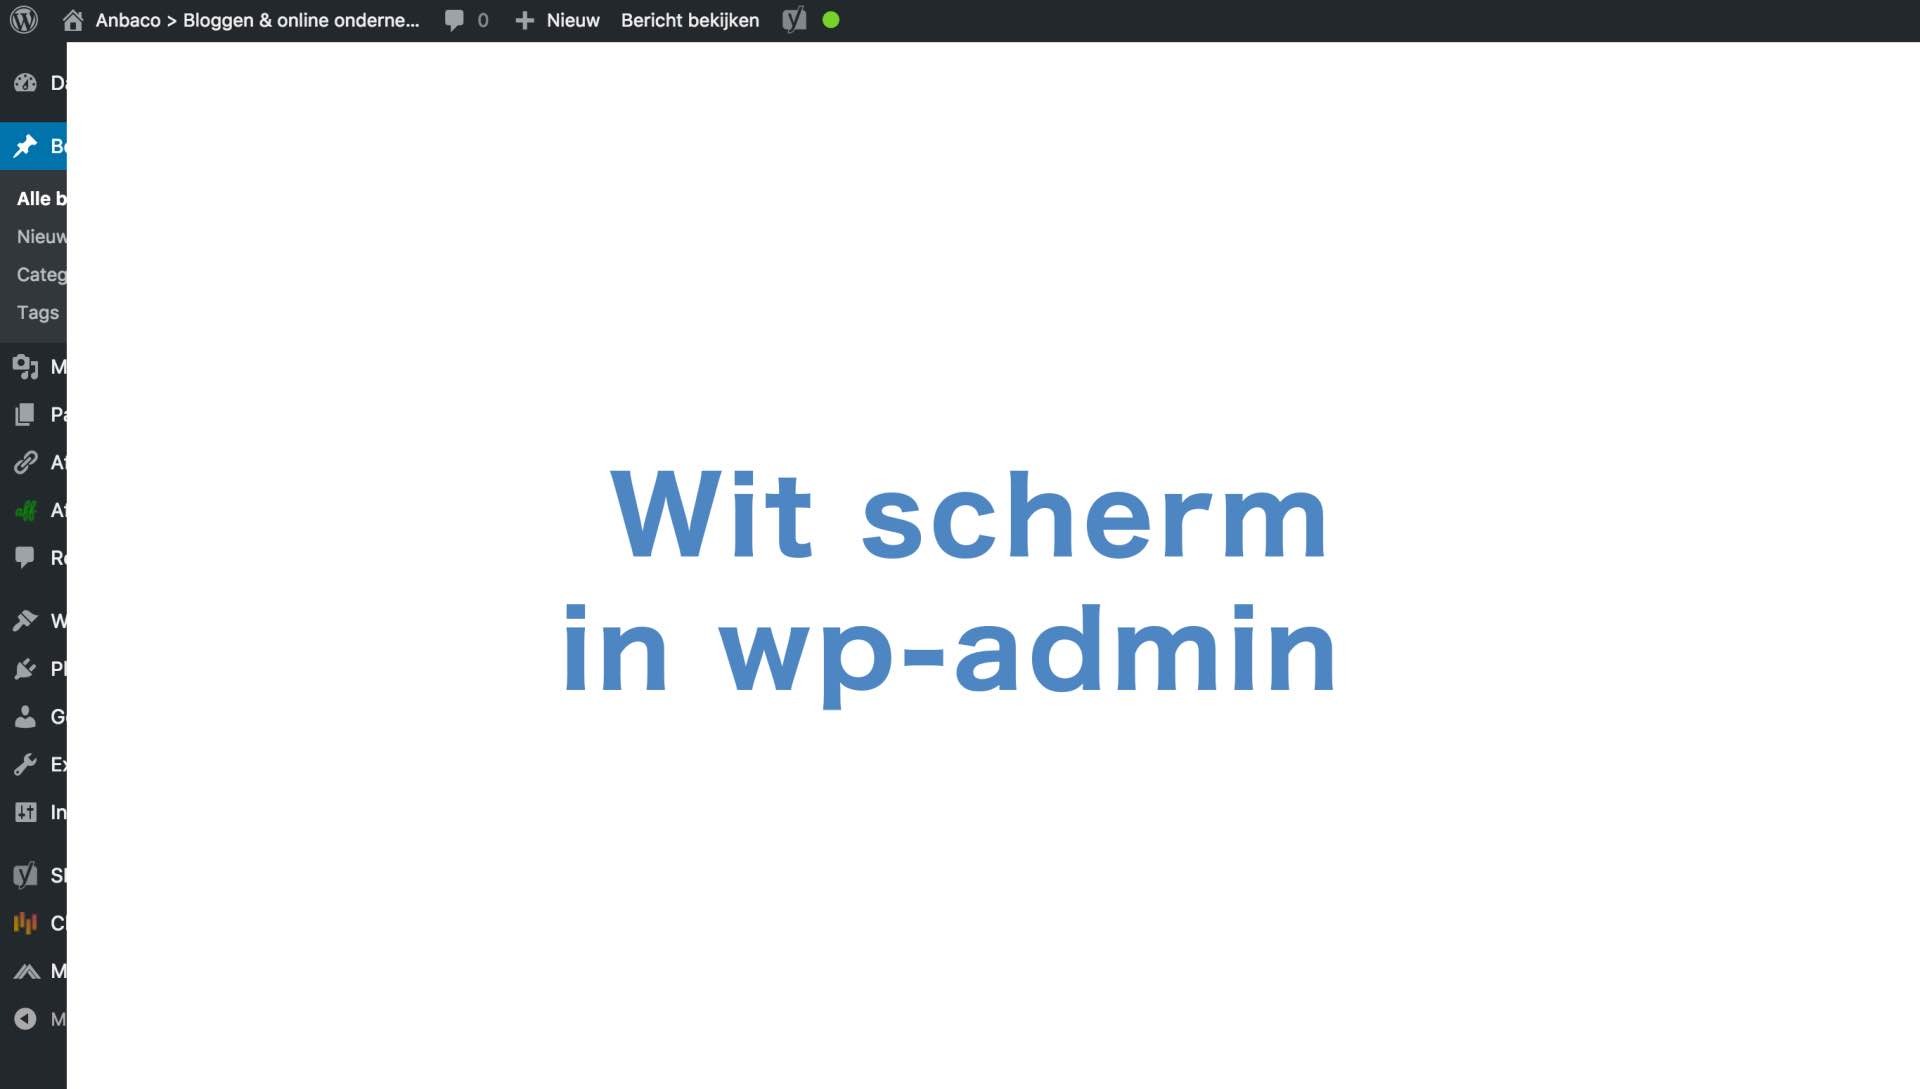 Je bekijkt nu Wit scherm – geen toegang tot wp-admin na update